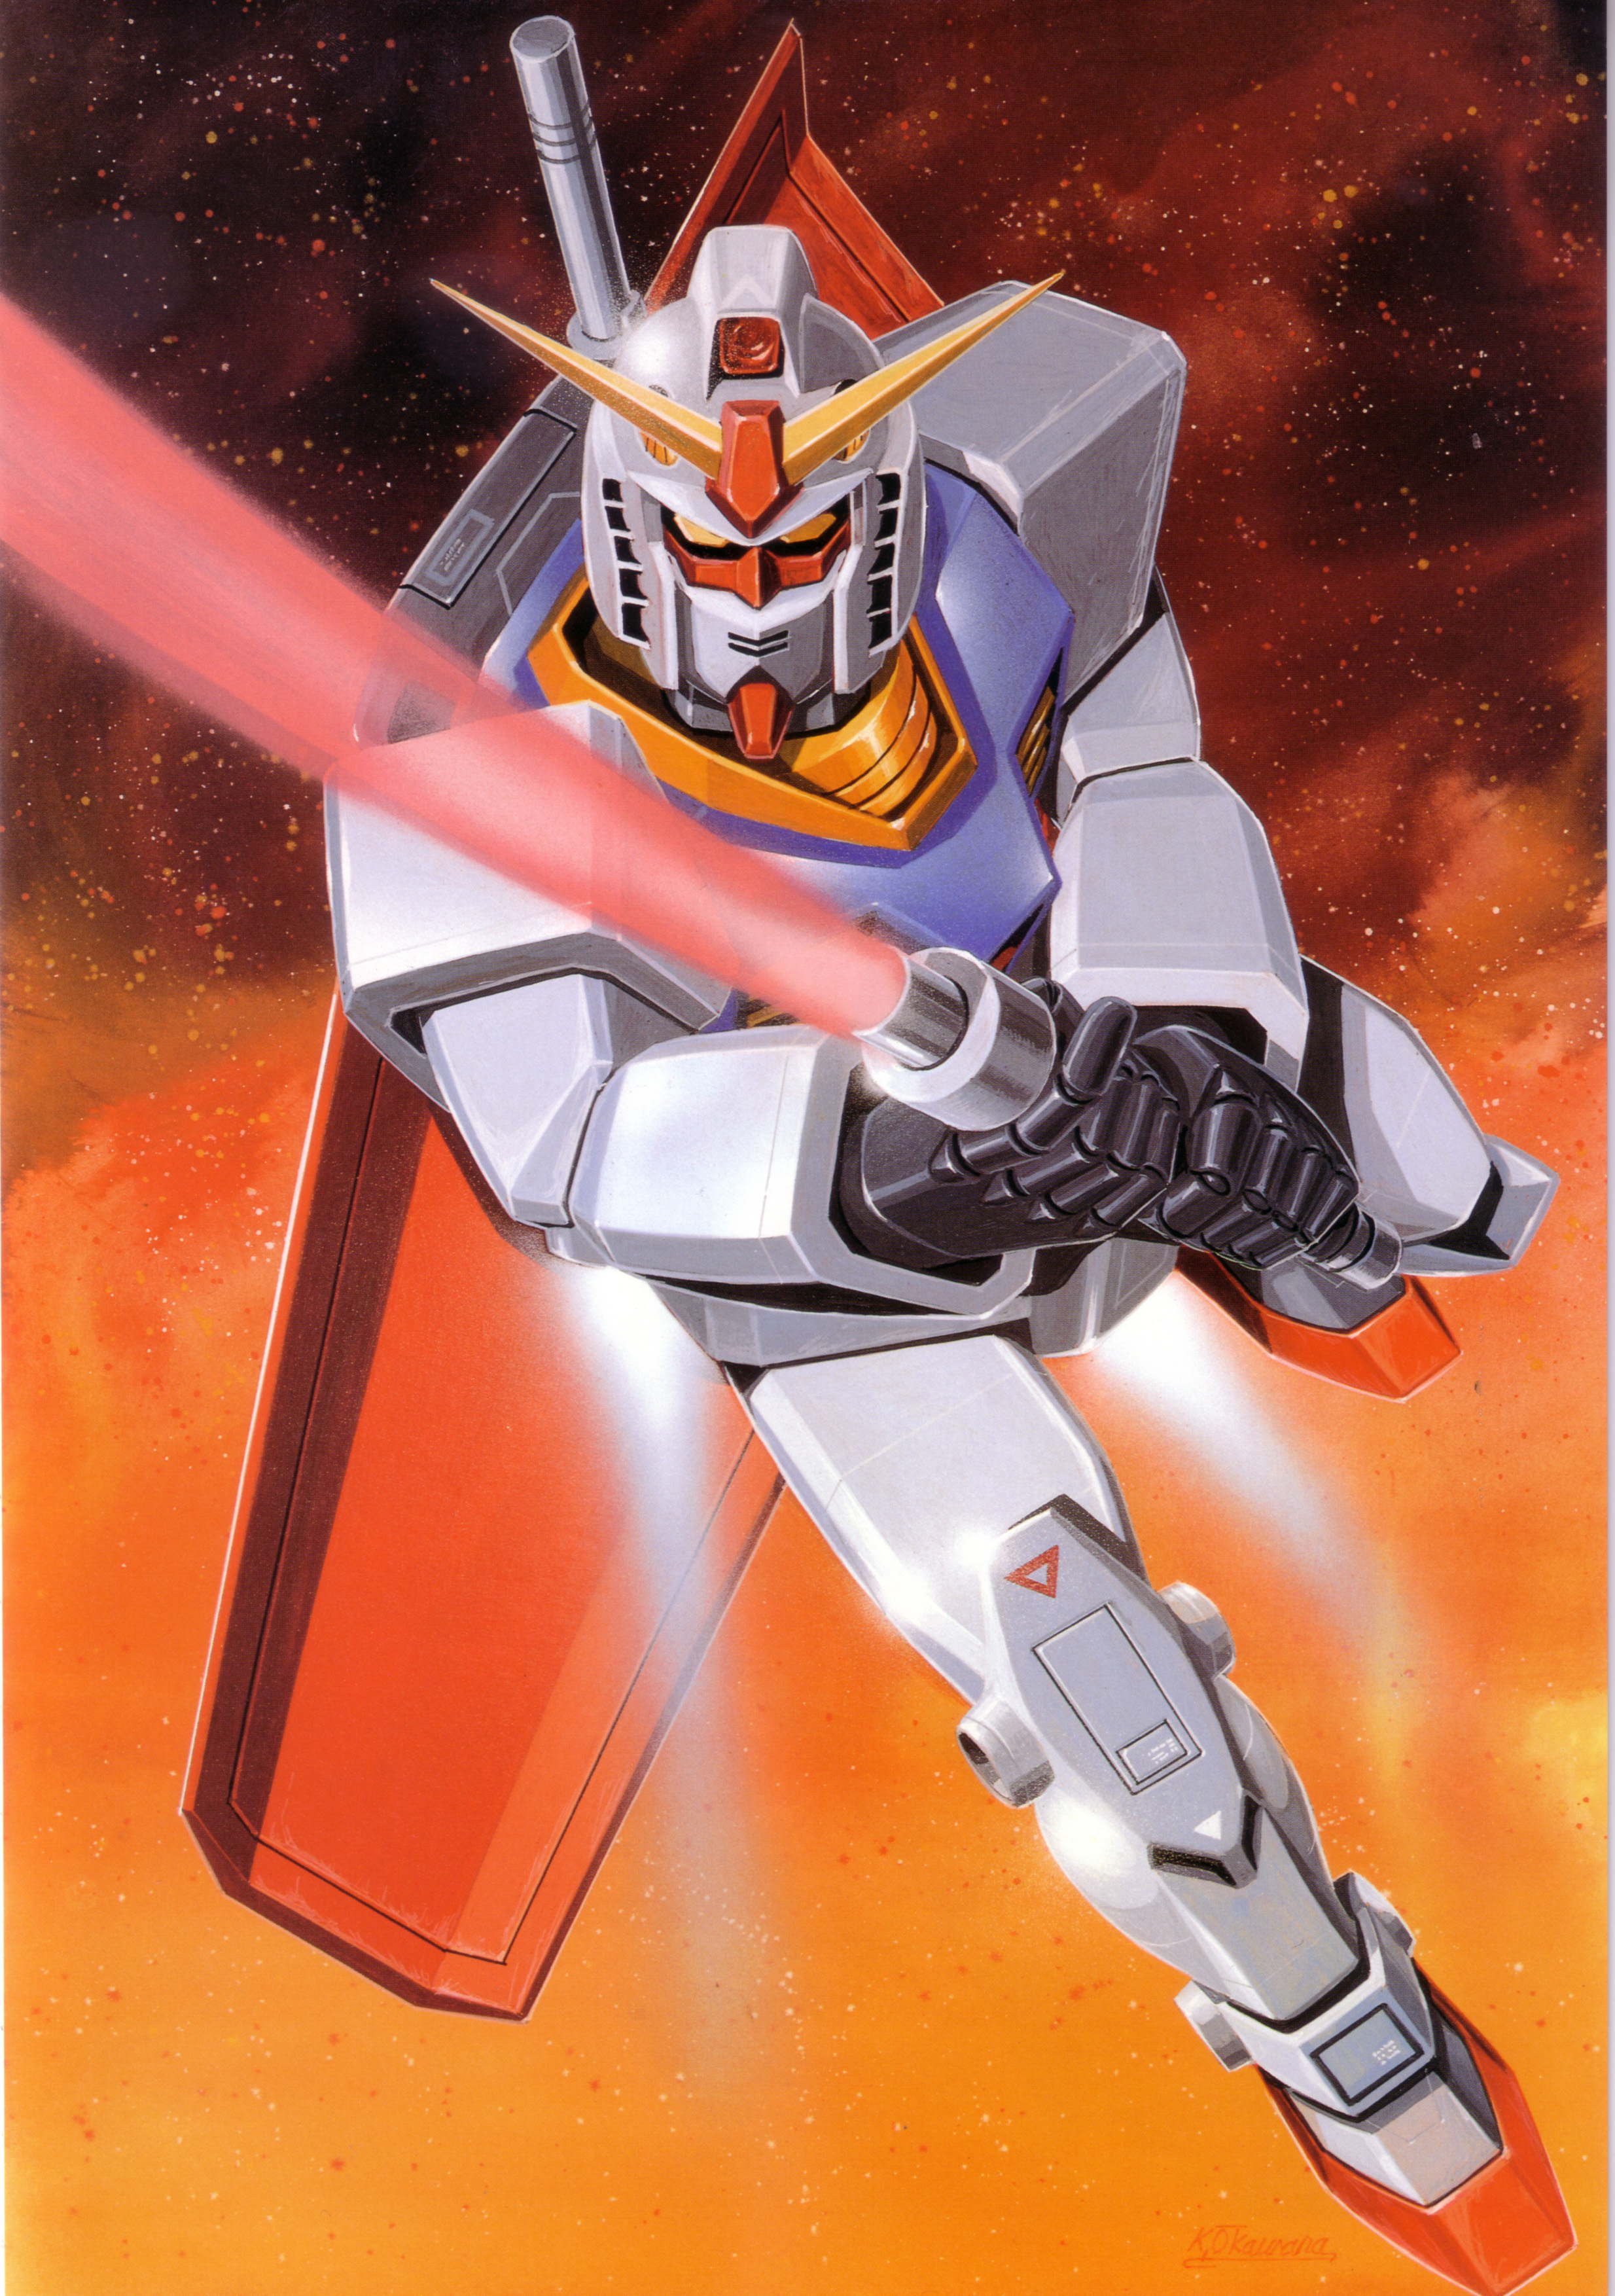 大河原邦男画集Gundam Art Works